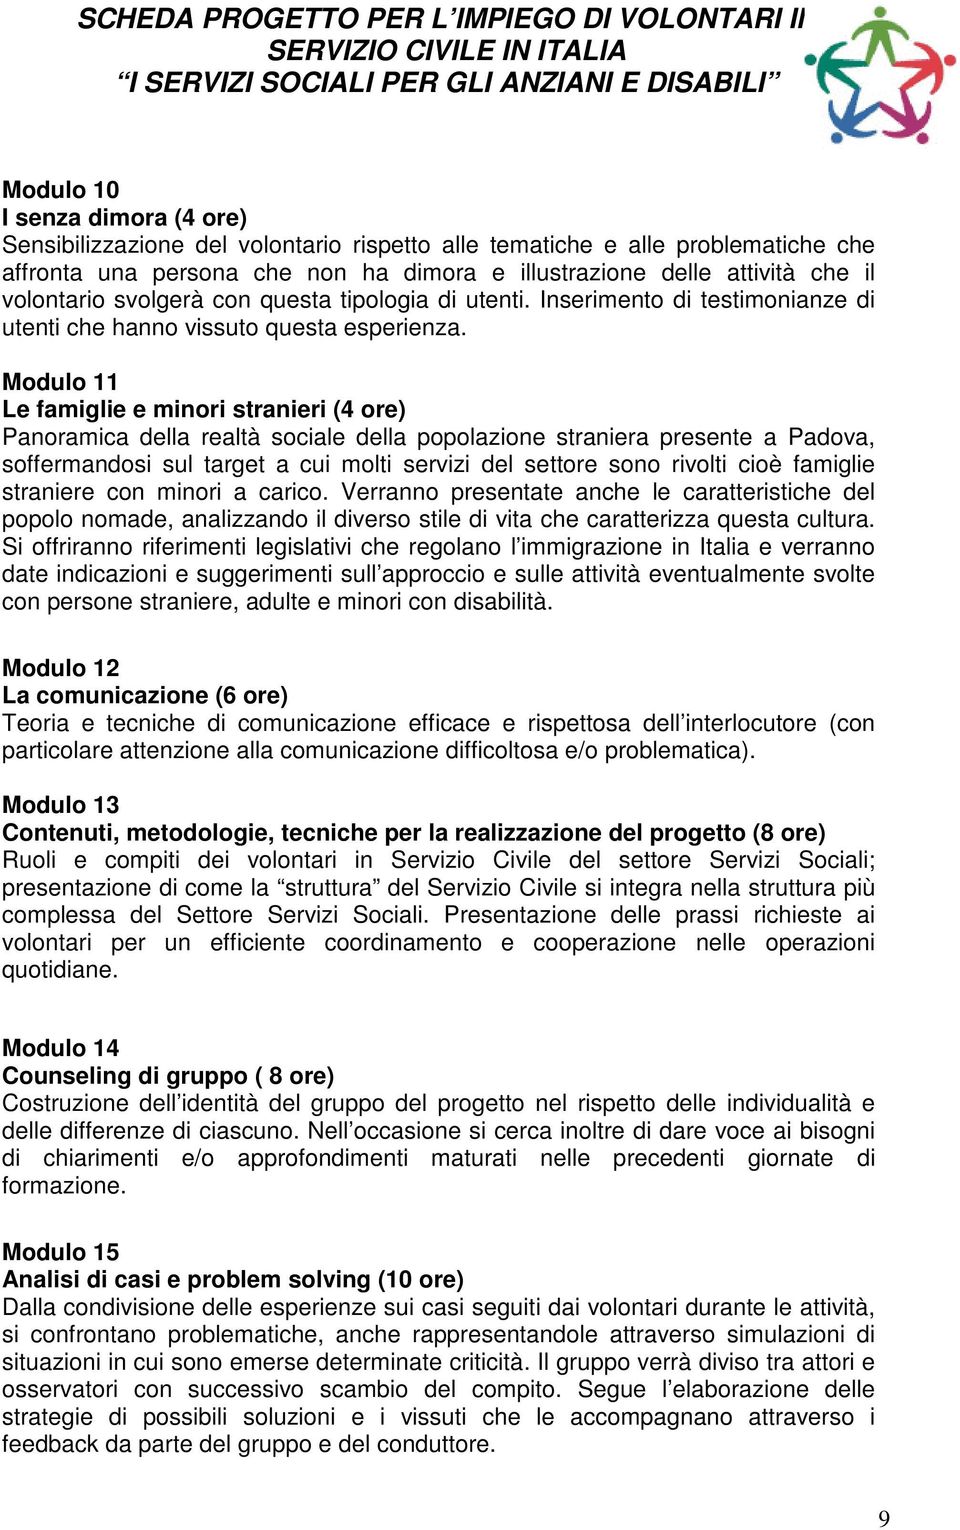 Modulo 11 Le famiglie e minori stranieri (4 ore) Panoramica della realtà sociale della popolazione straniera presente a Padova, soffermandosi sul target a cui molti servizi del settore sono rivolti